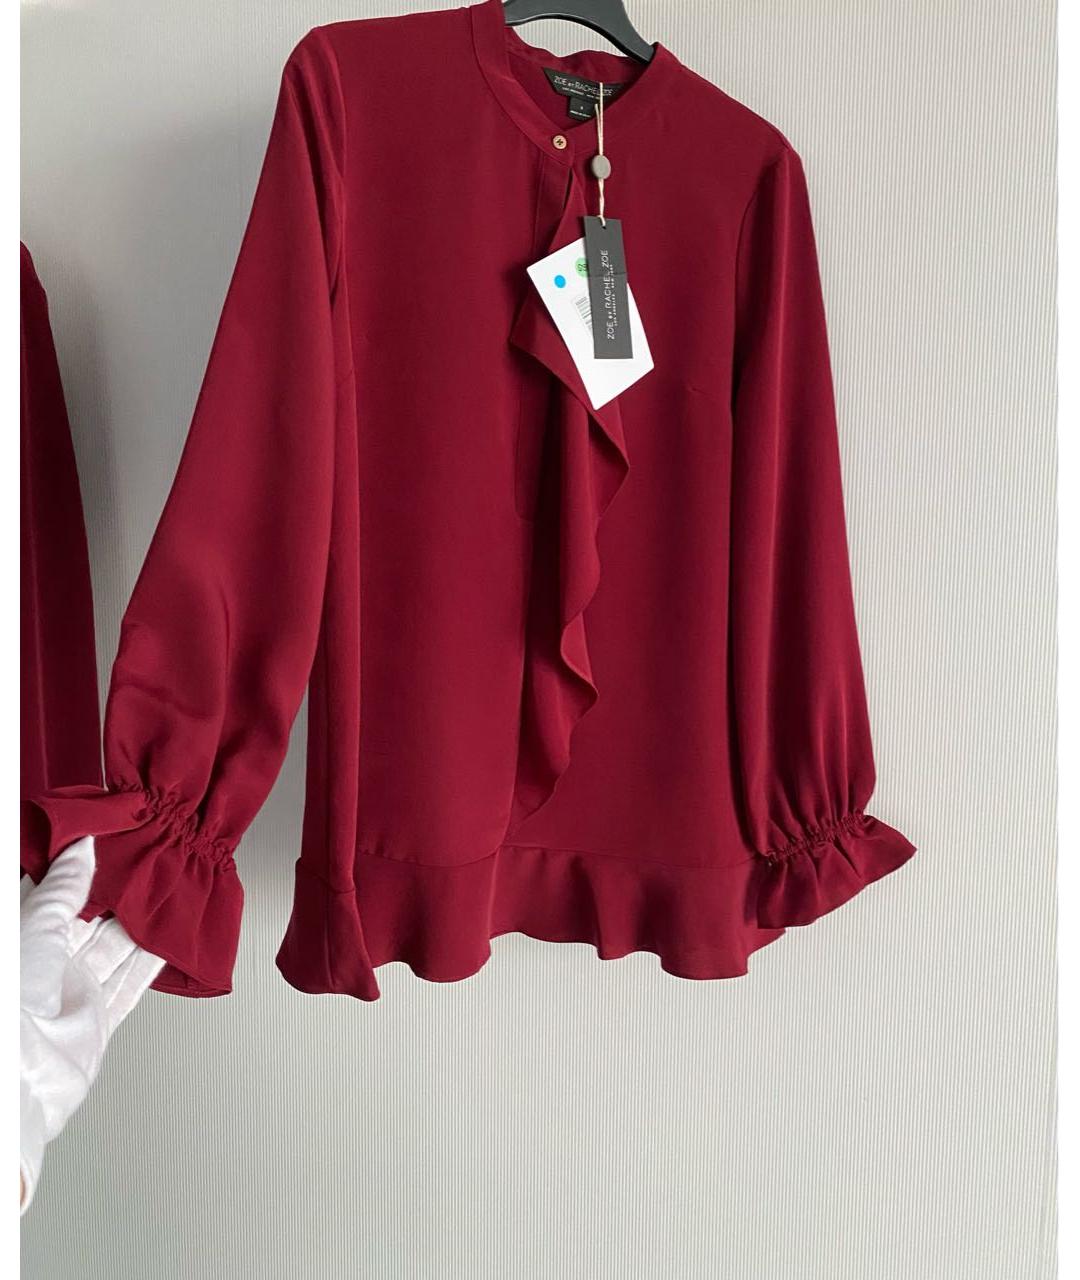 RACHEL ZOE Красная полиэстеровая блузы, фото 6